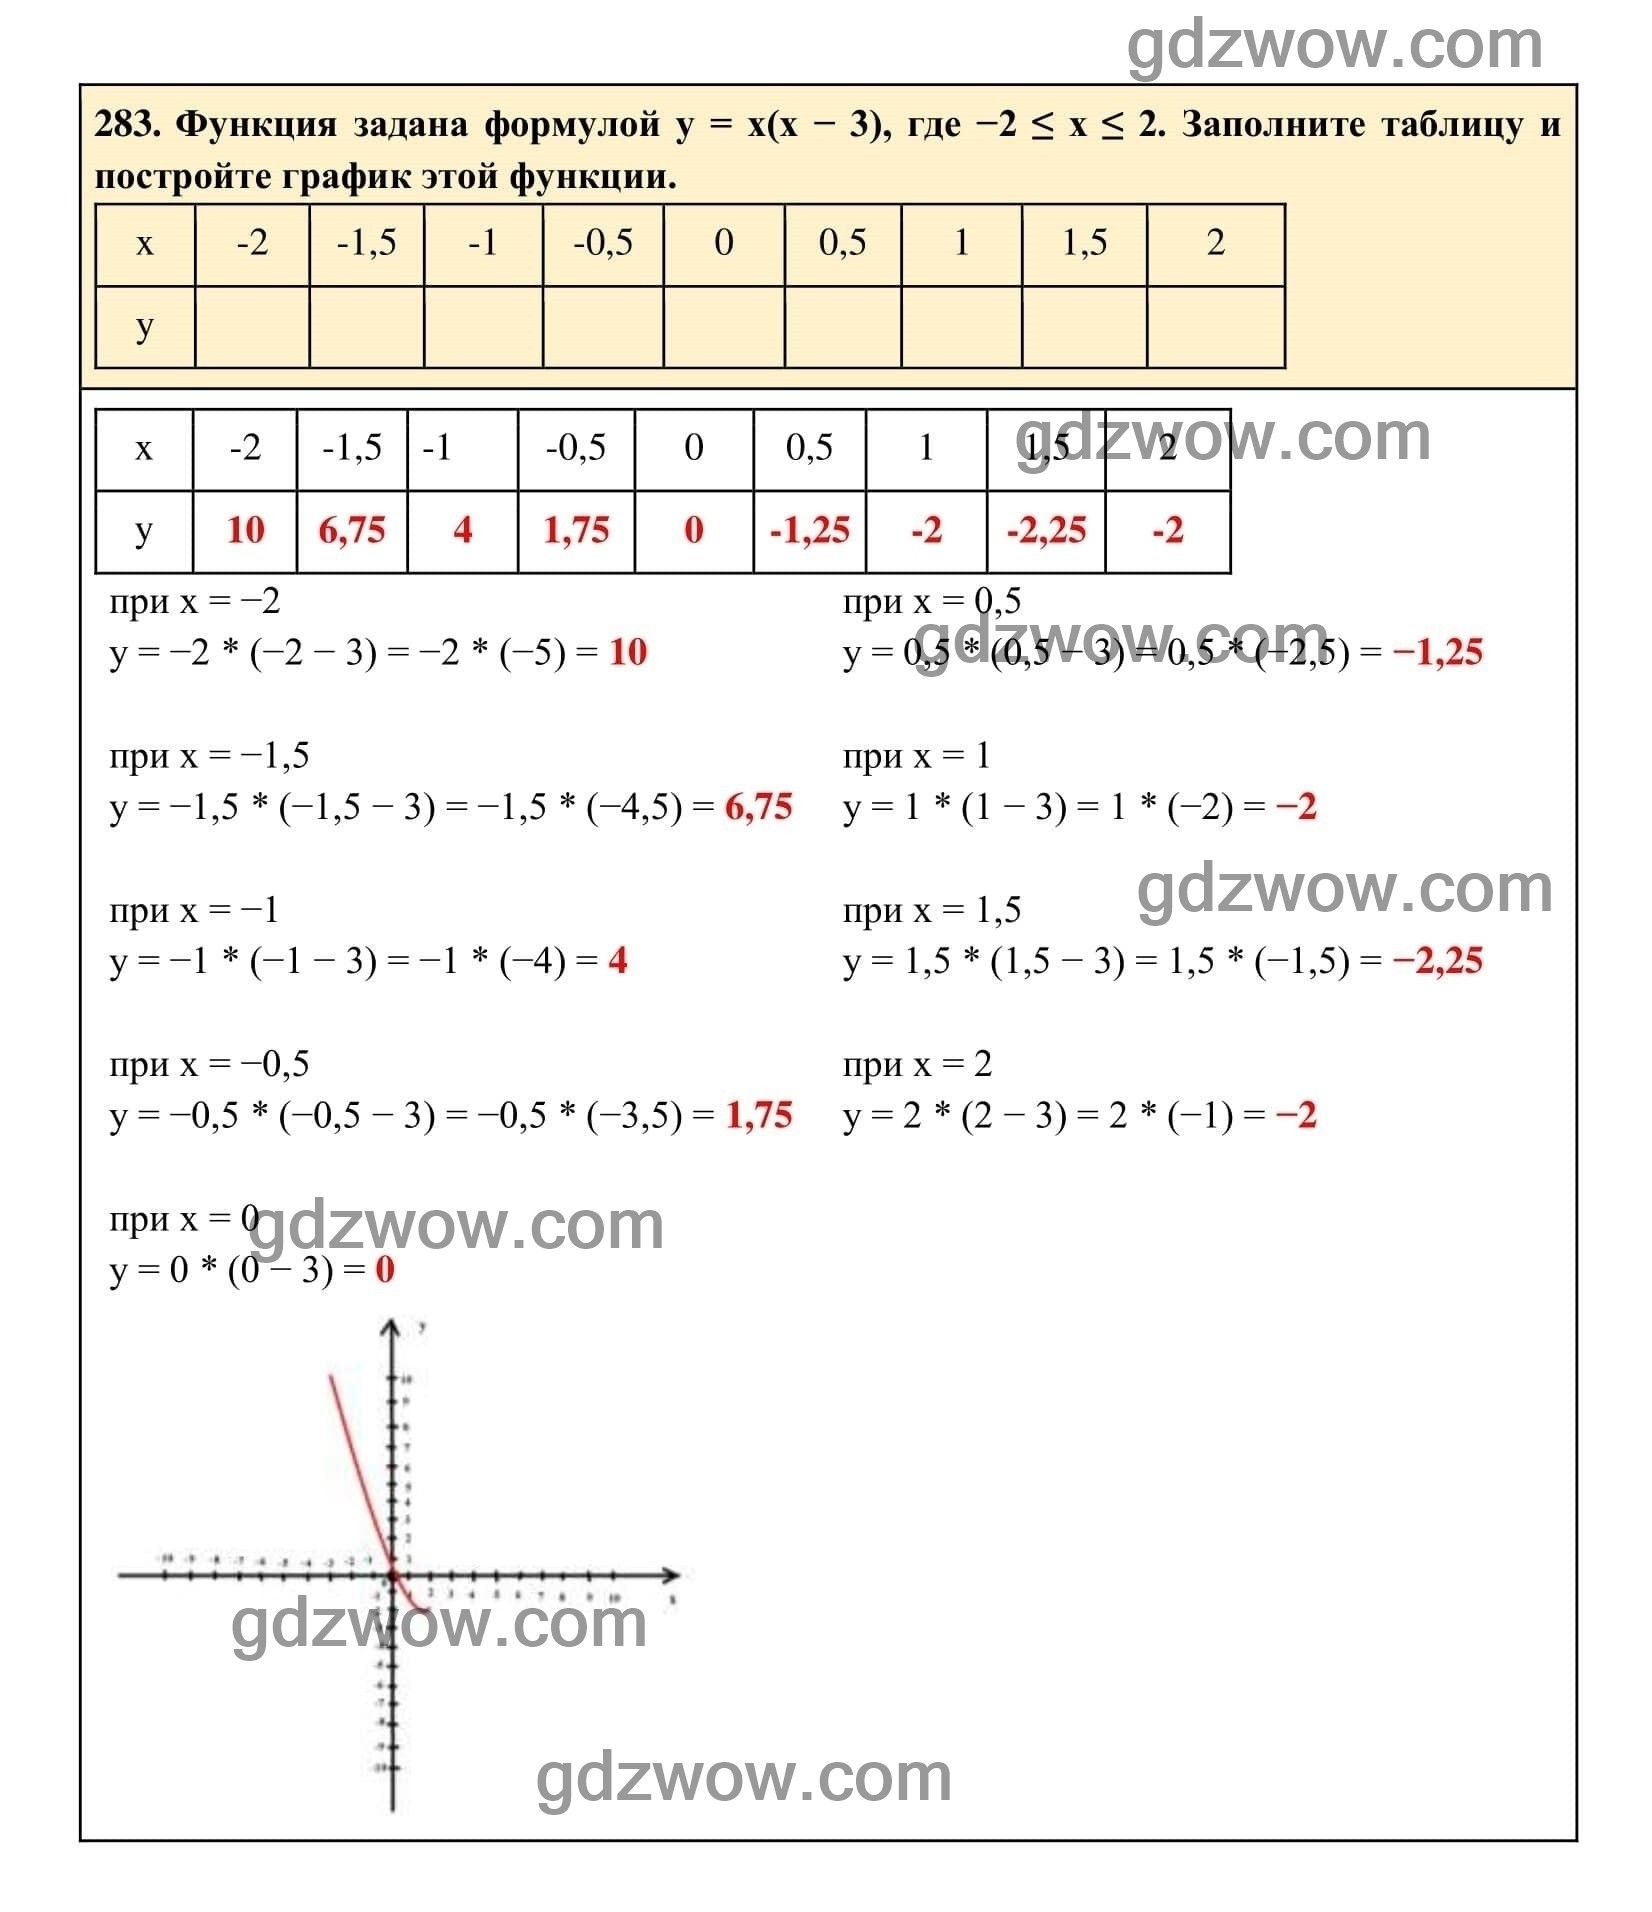 Упражнение 283 - ГДЗ по Алгебре 7 класс Учебник Макарычев (решебник) - GDZwow